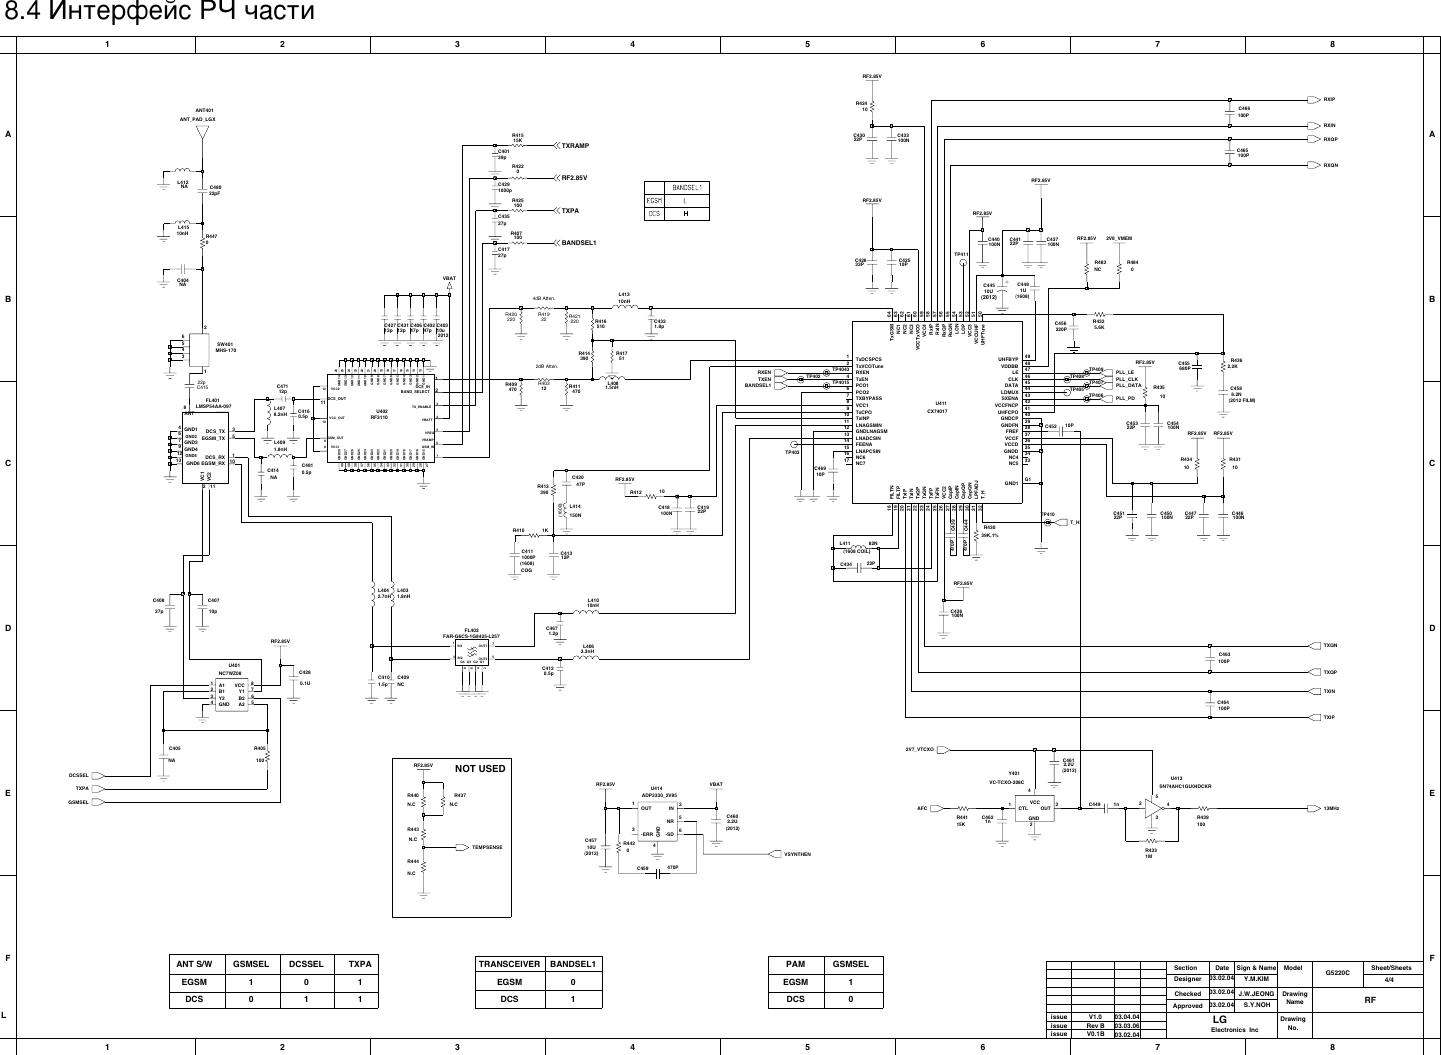 Page 4 of 7 - LG G5220C - Schematics. Www.s-manuals.com. Schematics